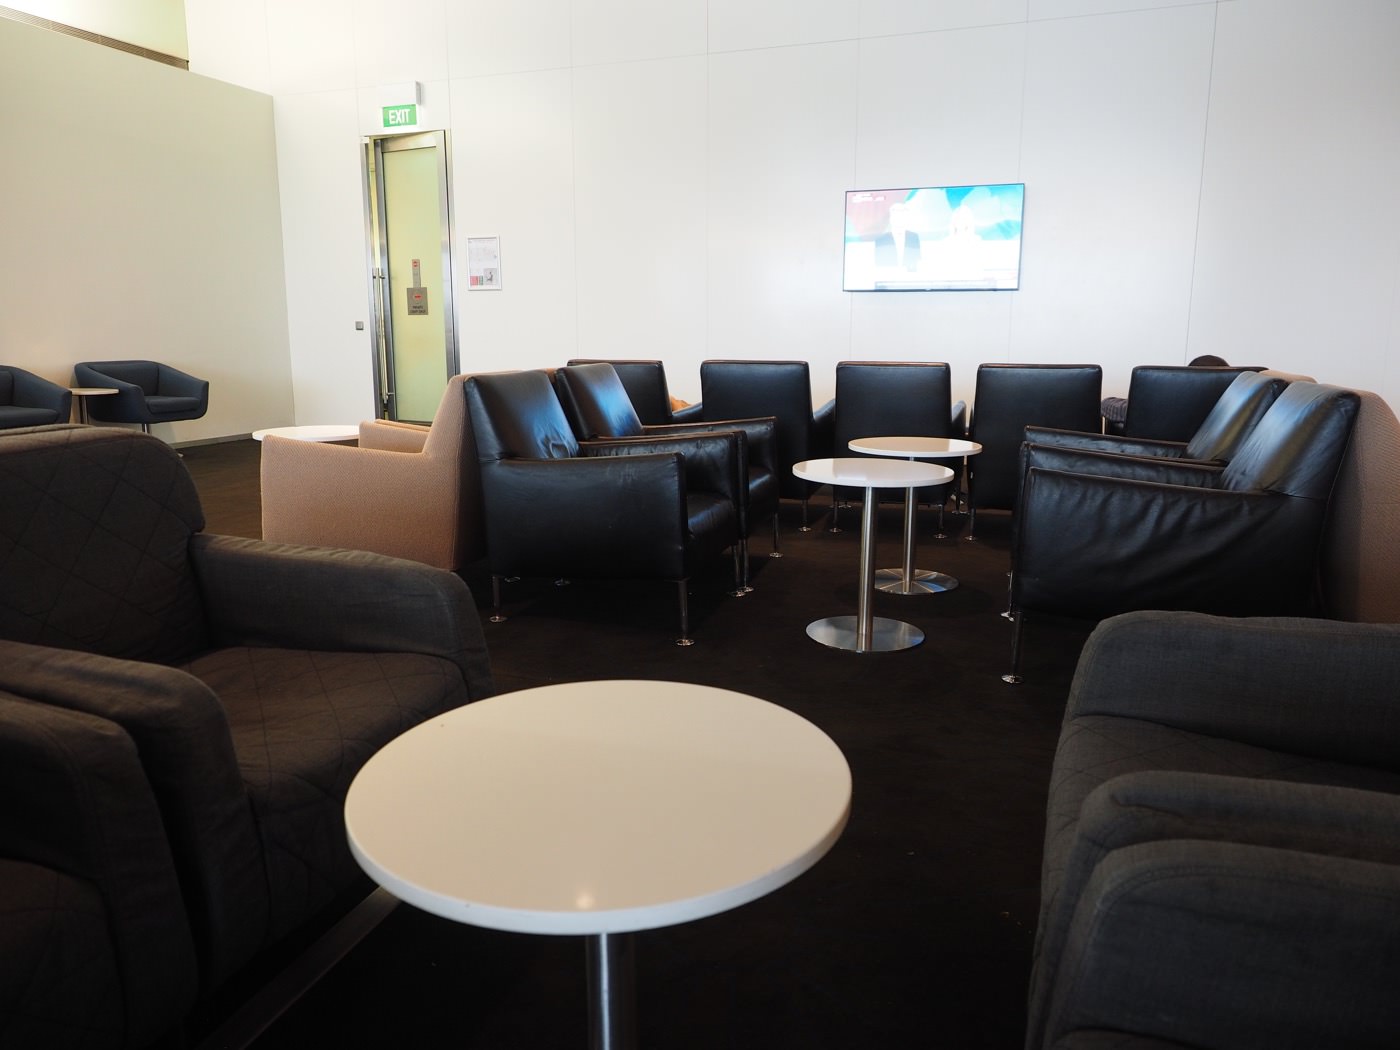 貴賓室 澳洲雪梨 機場貴賓室 澳洲航空商務貴賓室 Qantas Business Lounge - 一口冒險 Bitesized Adventure